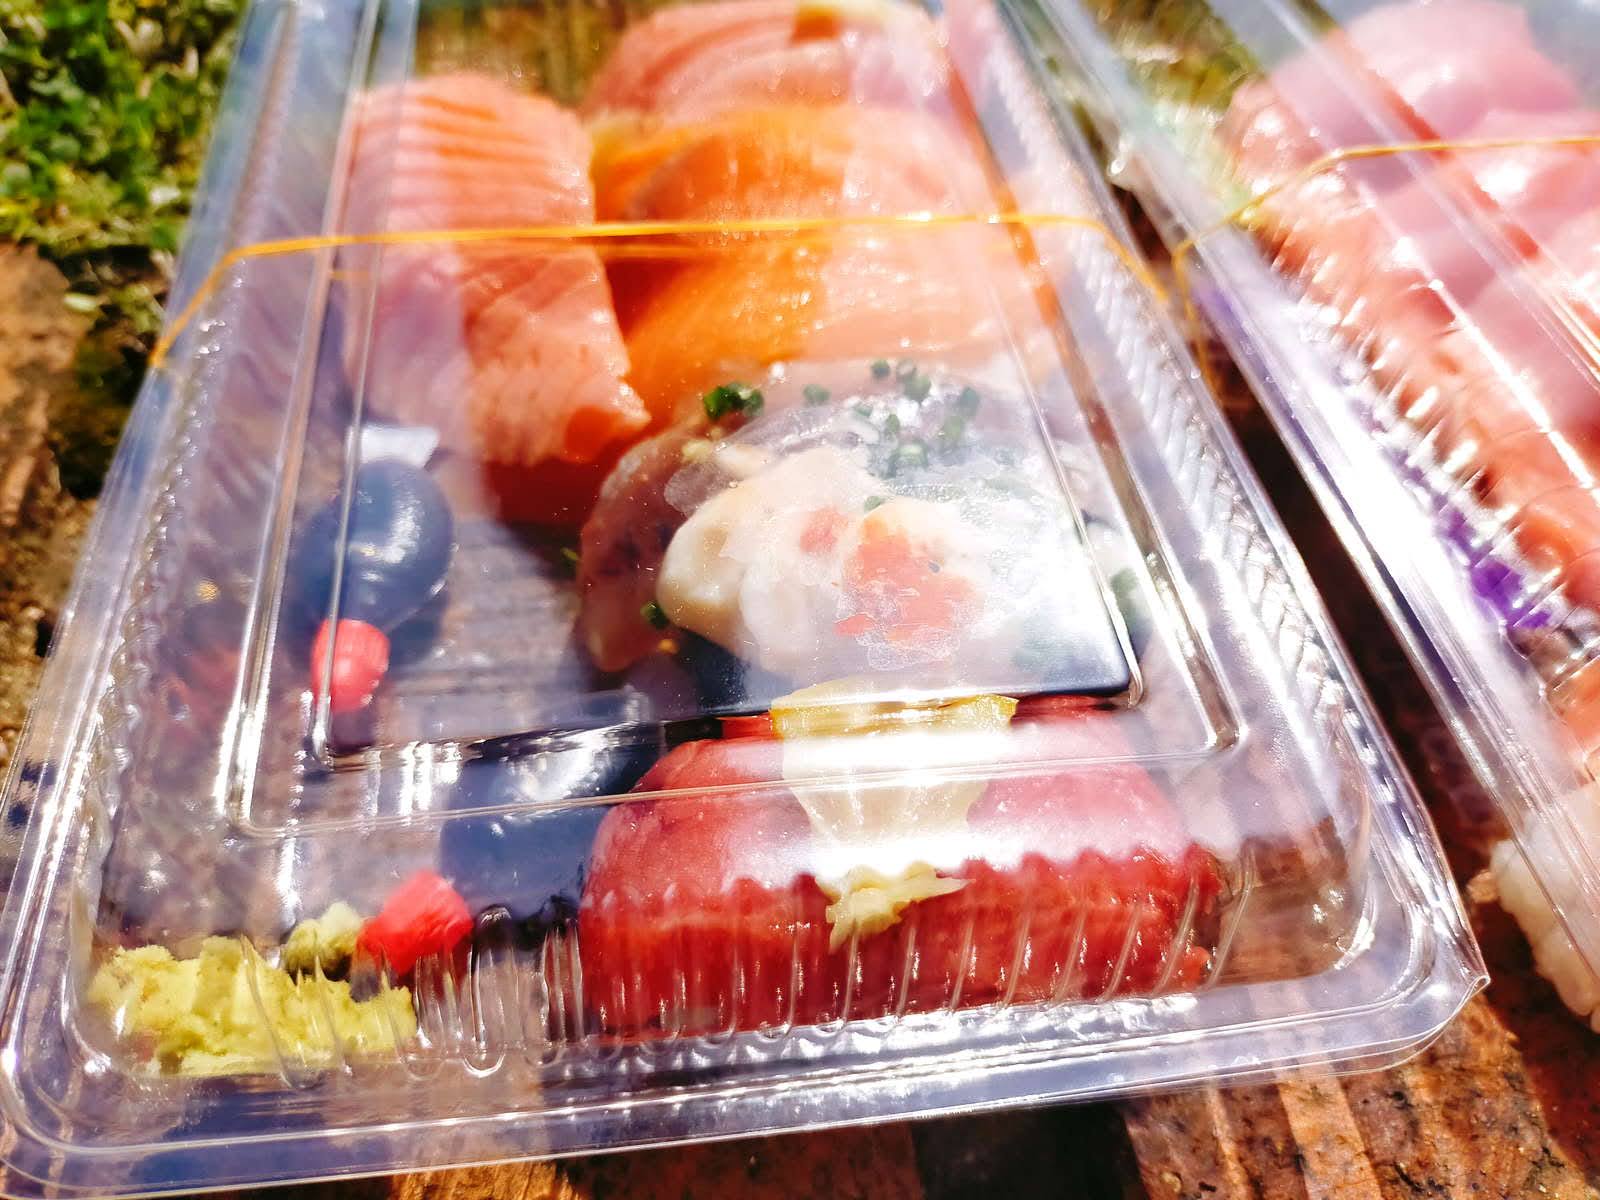 唐戸市場で買ったお寿司たち。